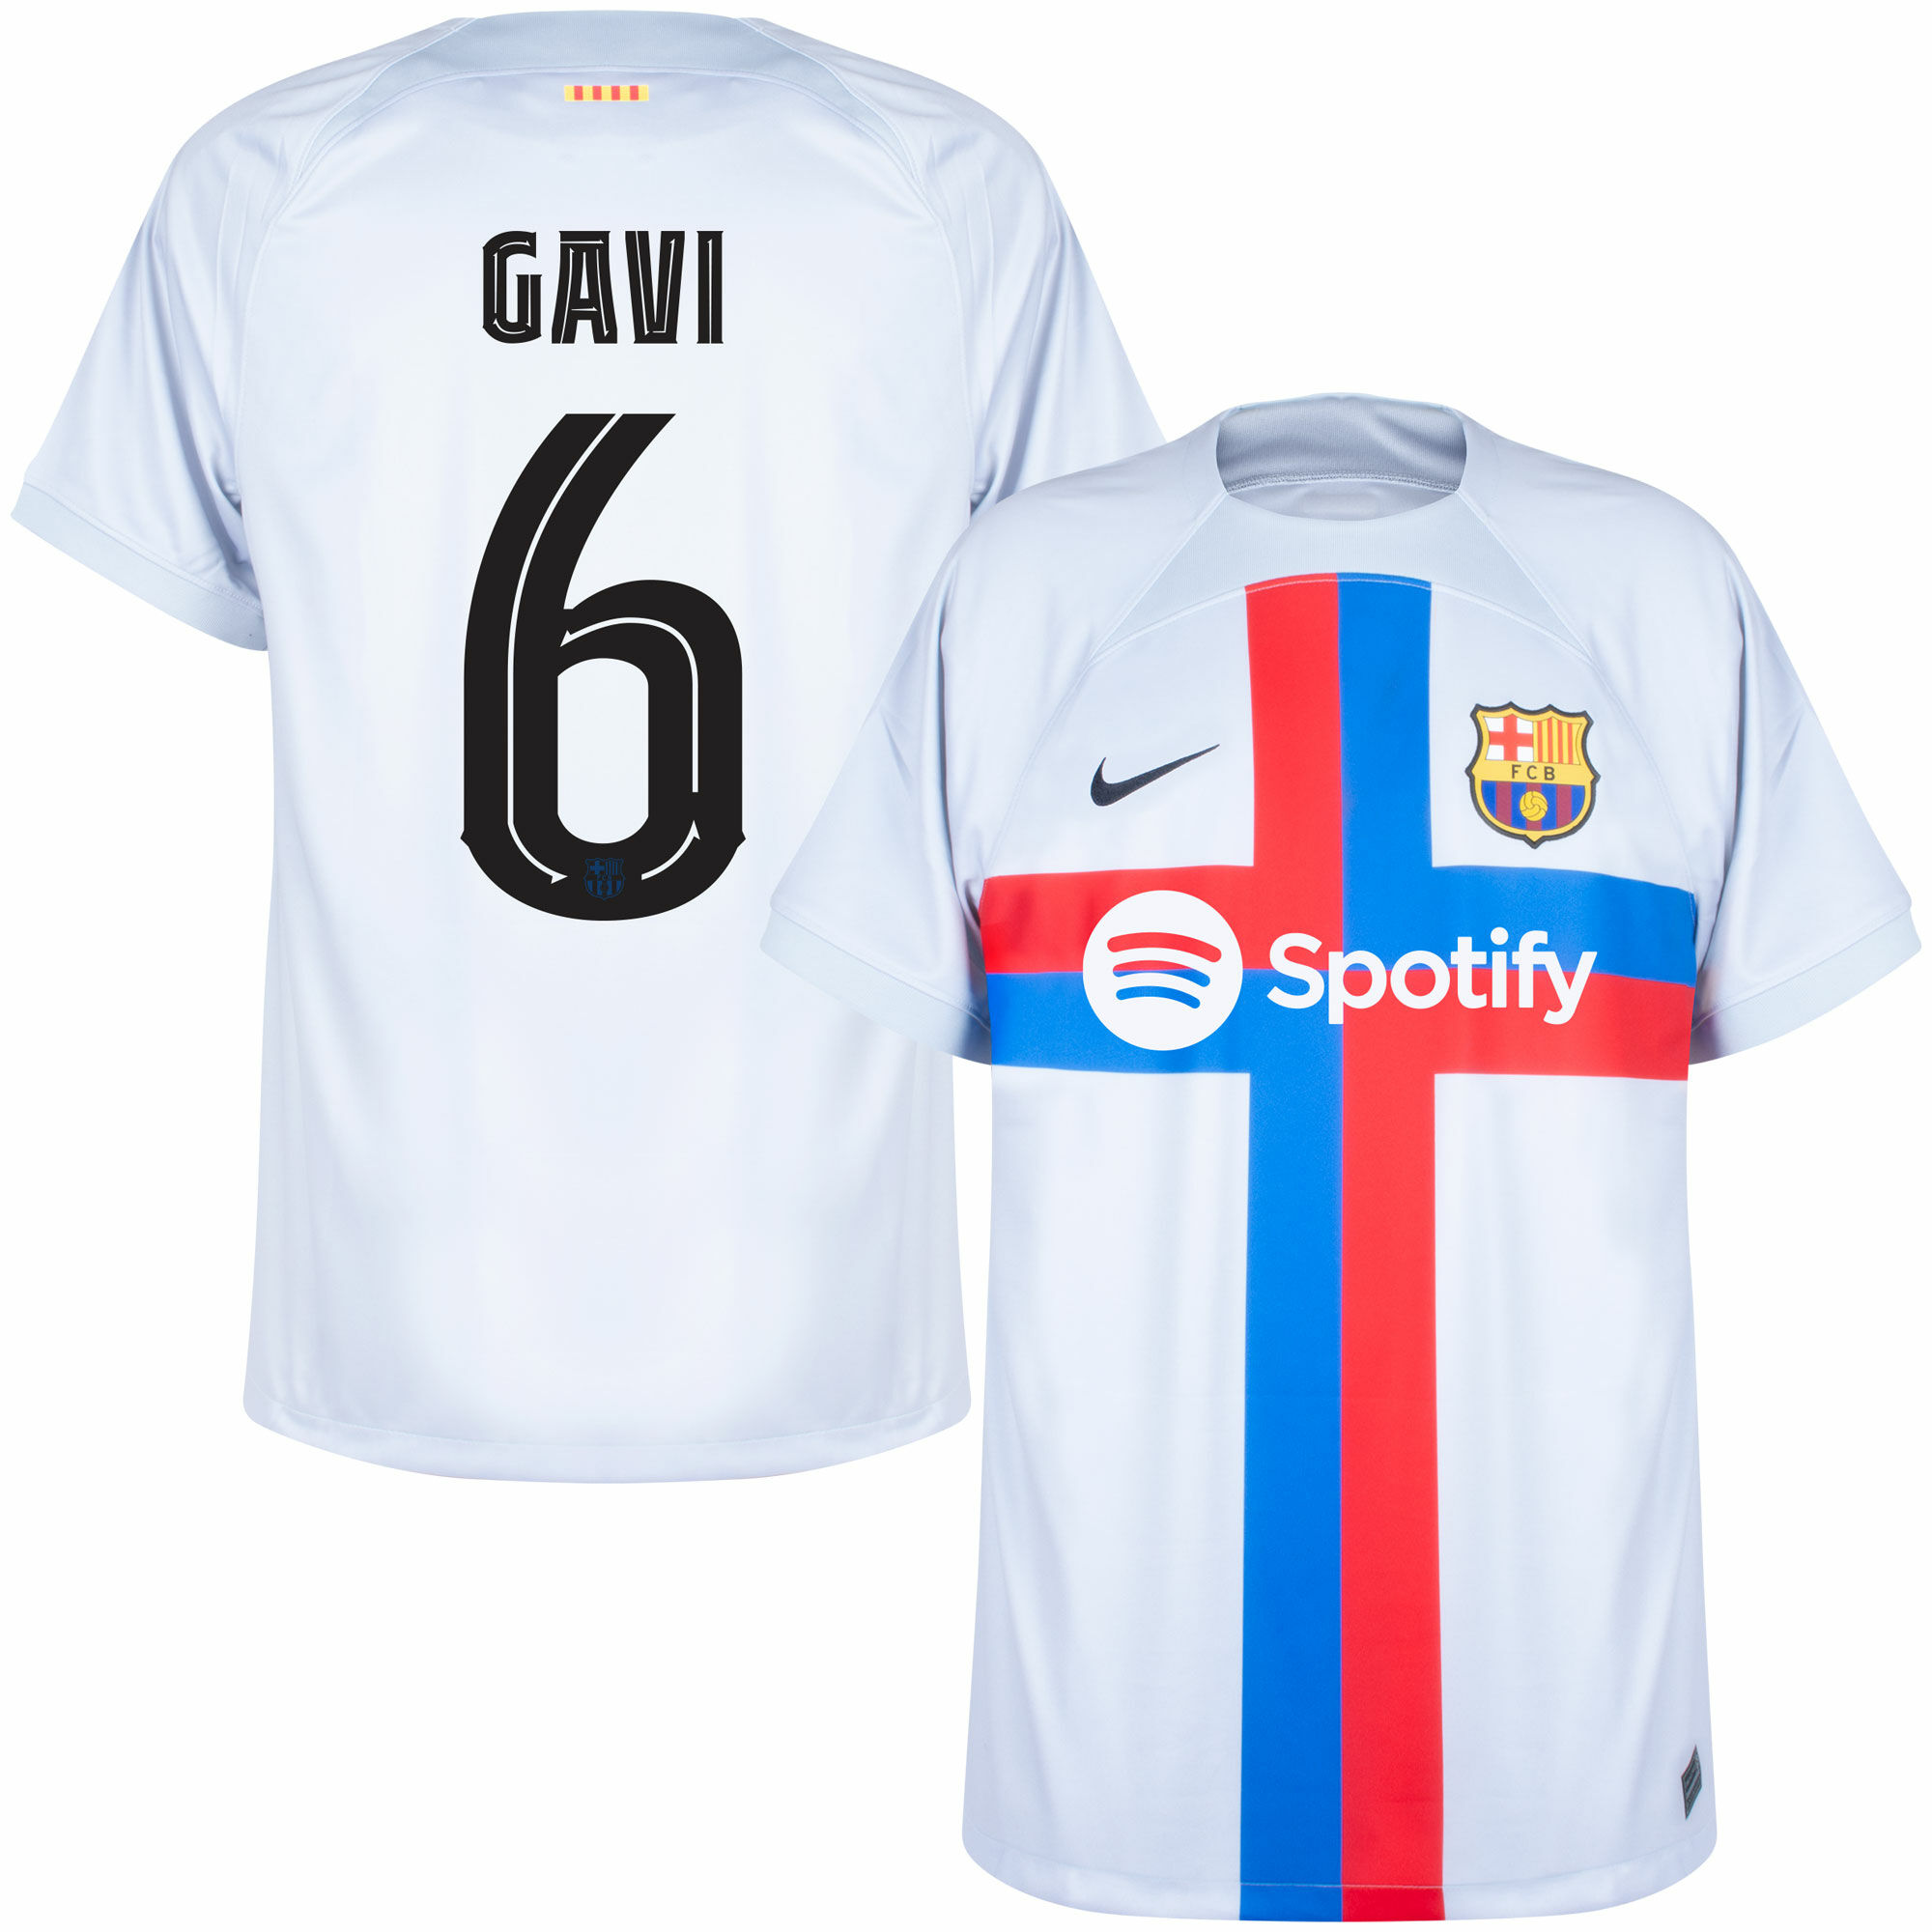 Barcelona - Dres fotbalový - oficiální potisk, Gavi, číslo 6, bílý, sezóna 2022/23, třetí sada